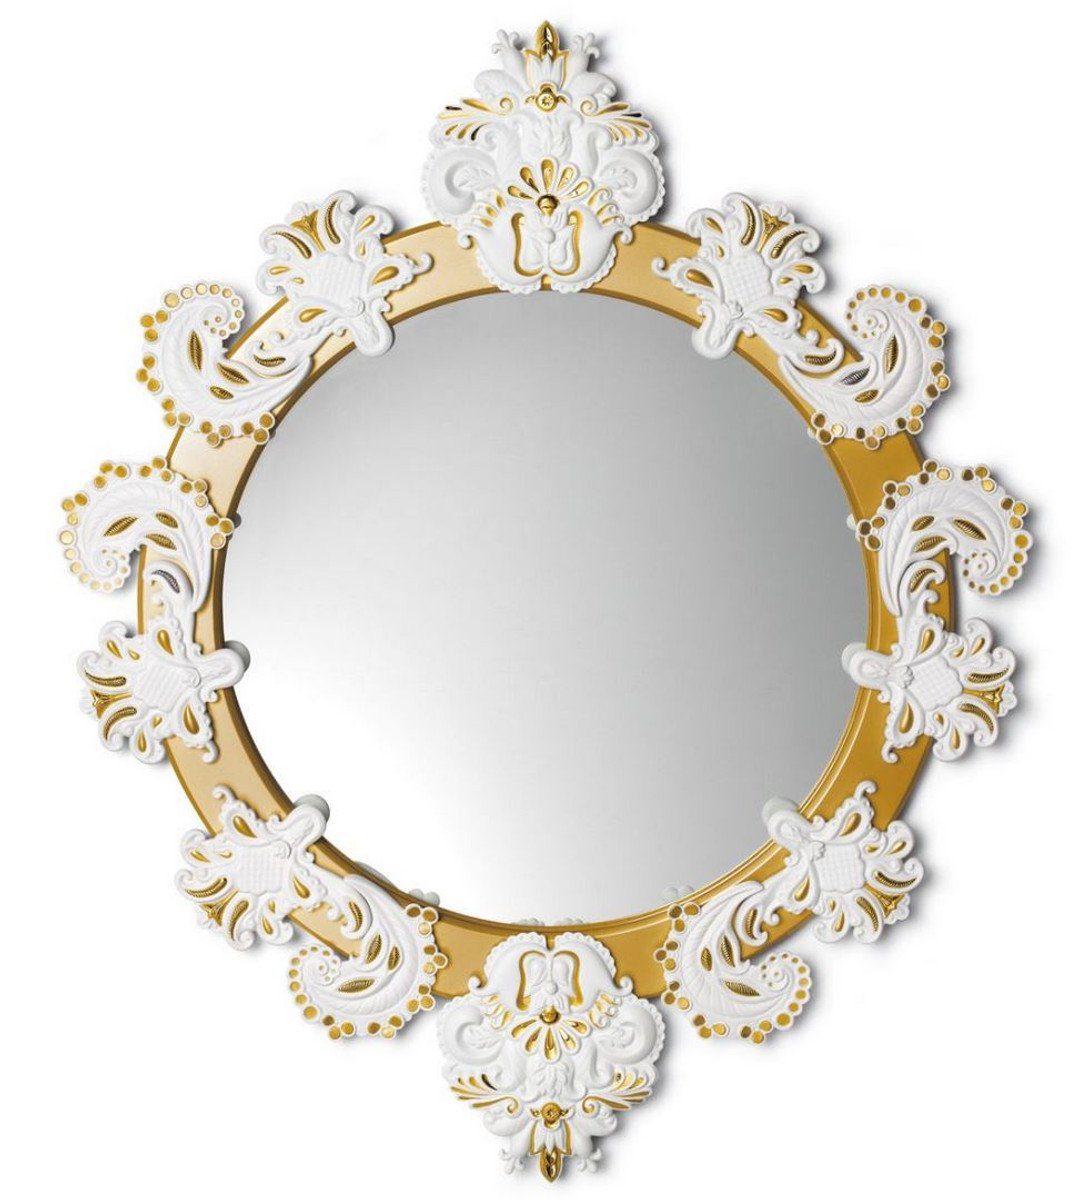 Casa Padrino Wandspiegel Designer Wandspiegel Gold / Weiß 72 x H. 90 cm - Luxus Spiegel mit handgefertigter Porzellan Deko aus feinstem Spanischen Porzellan